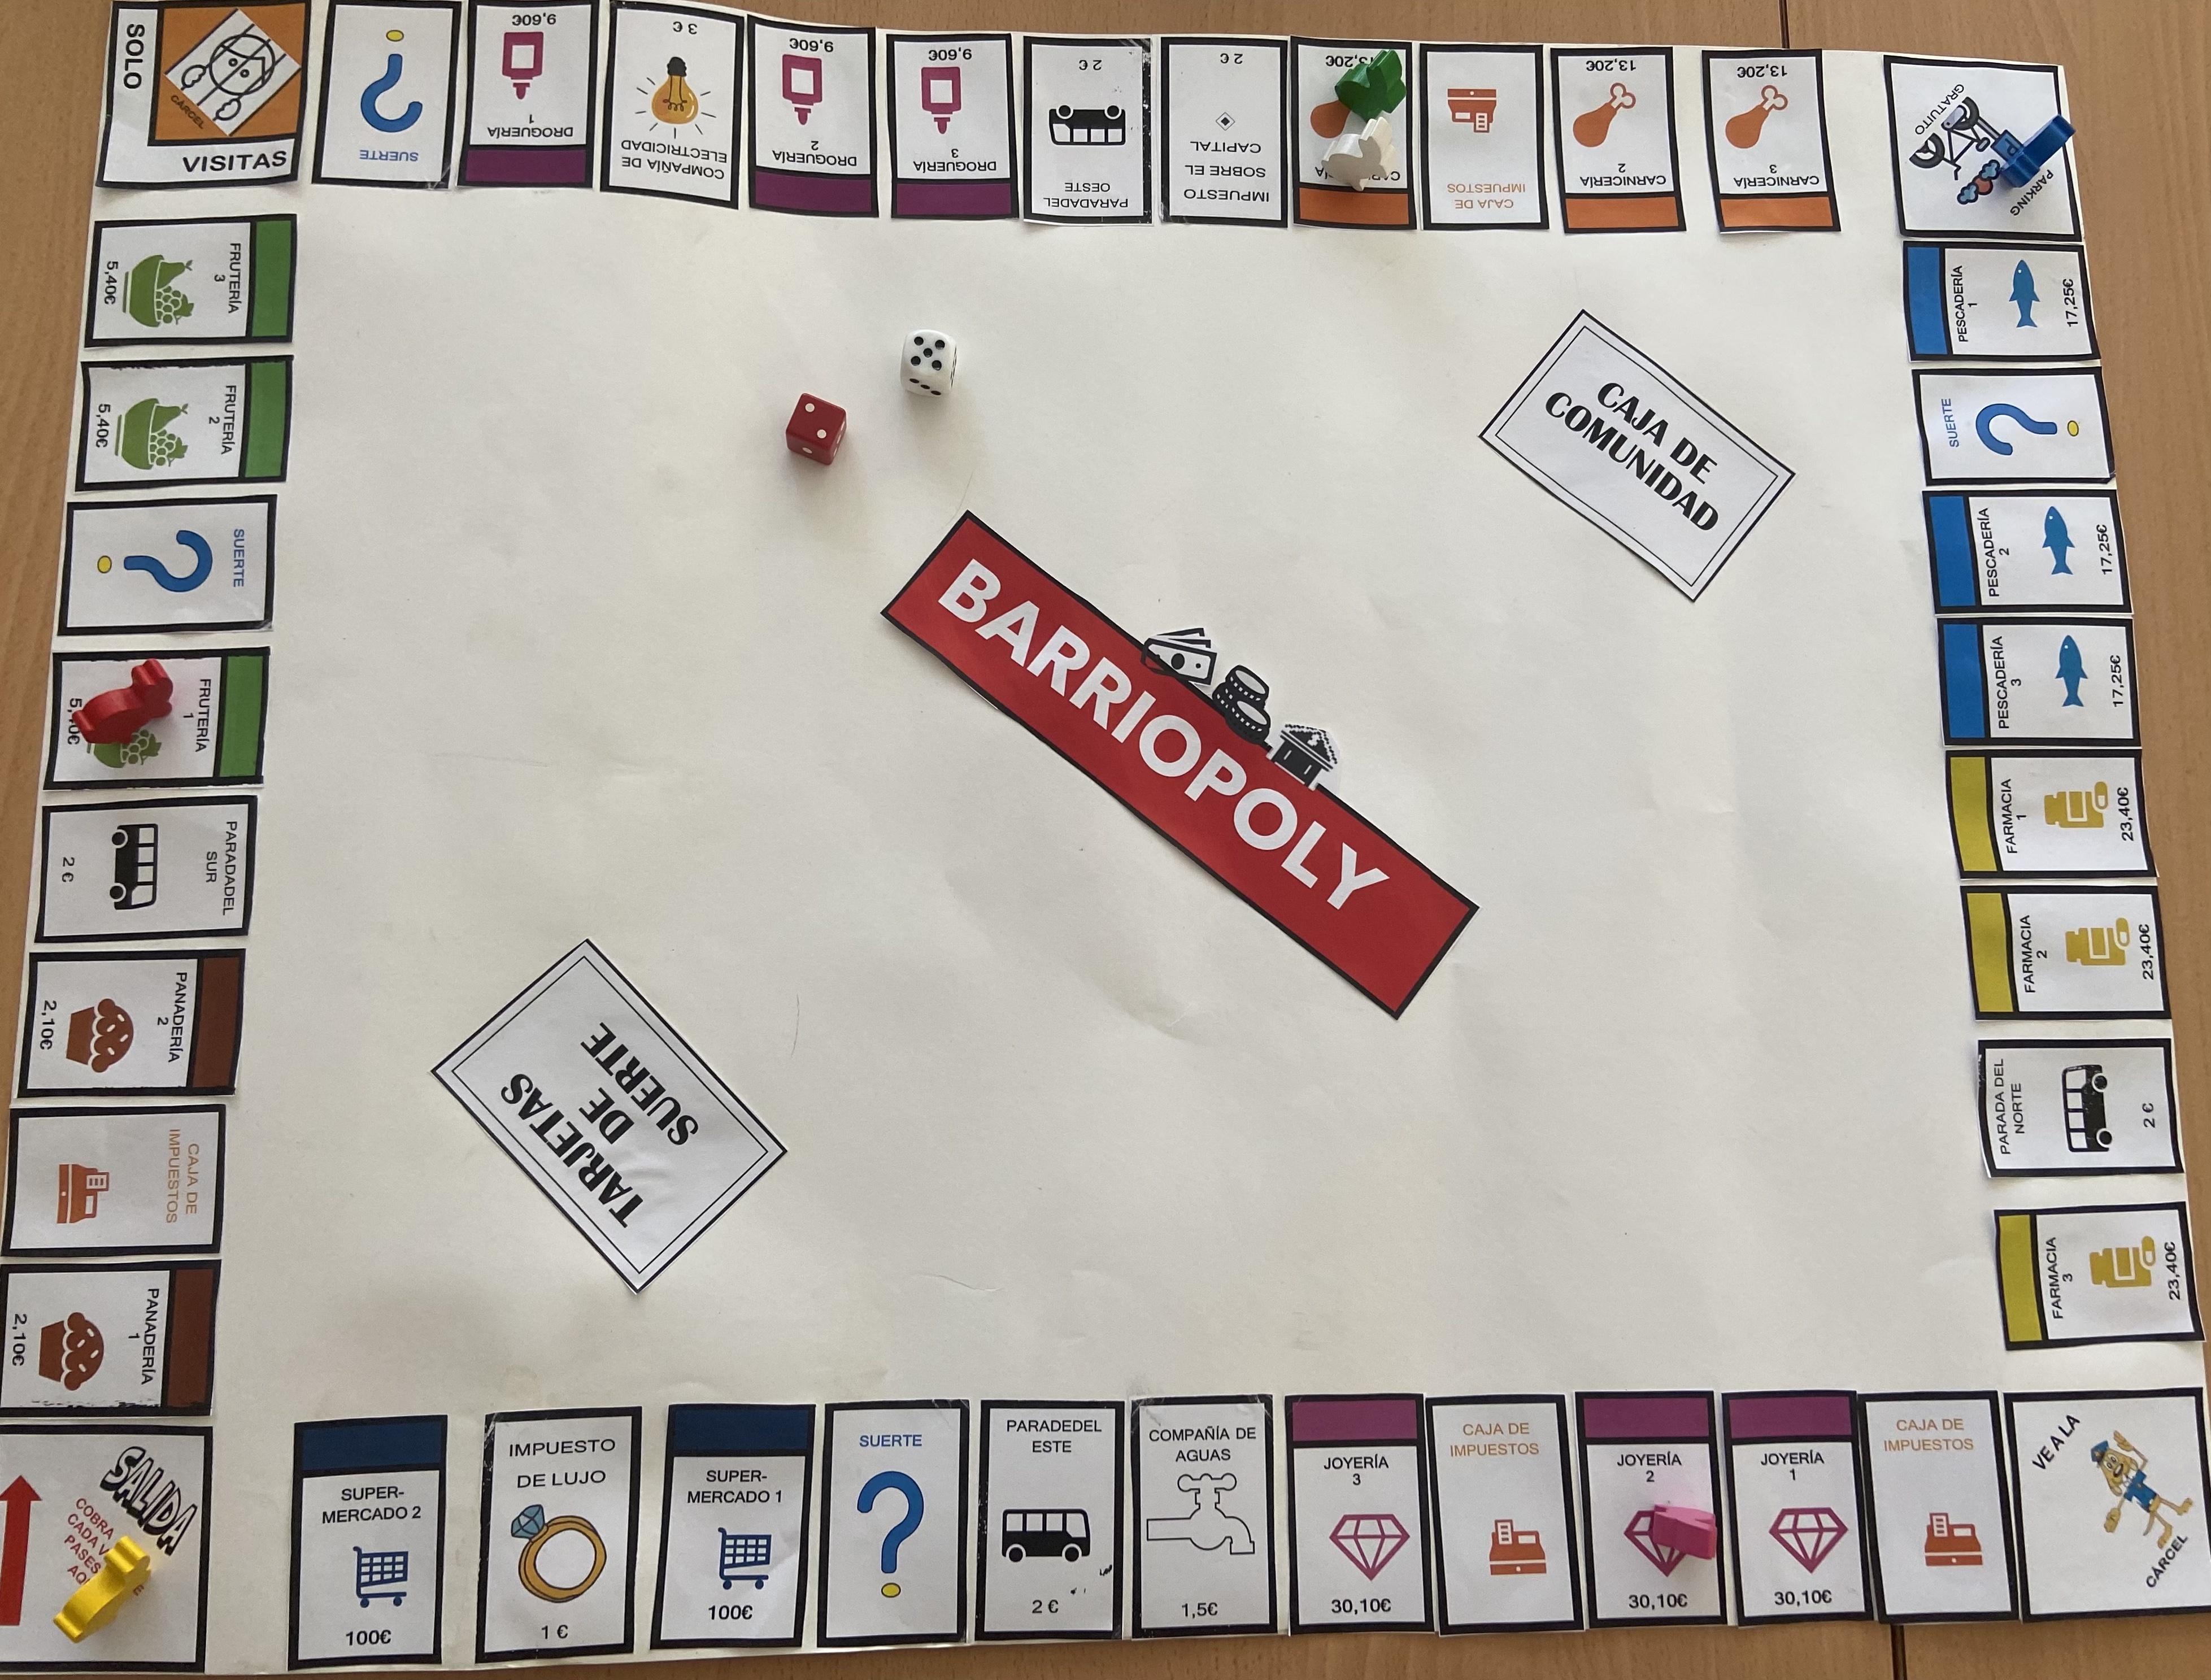 La imagen muestra el tablero de juego del barriopoly